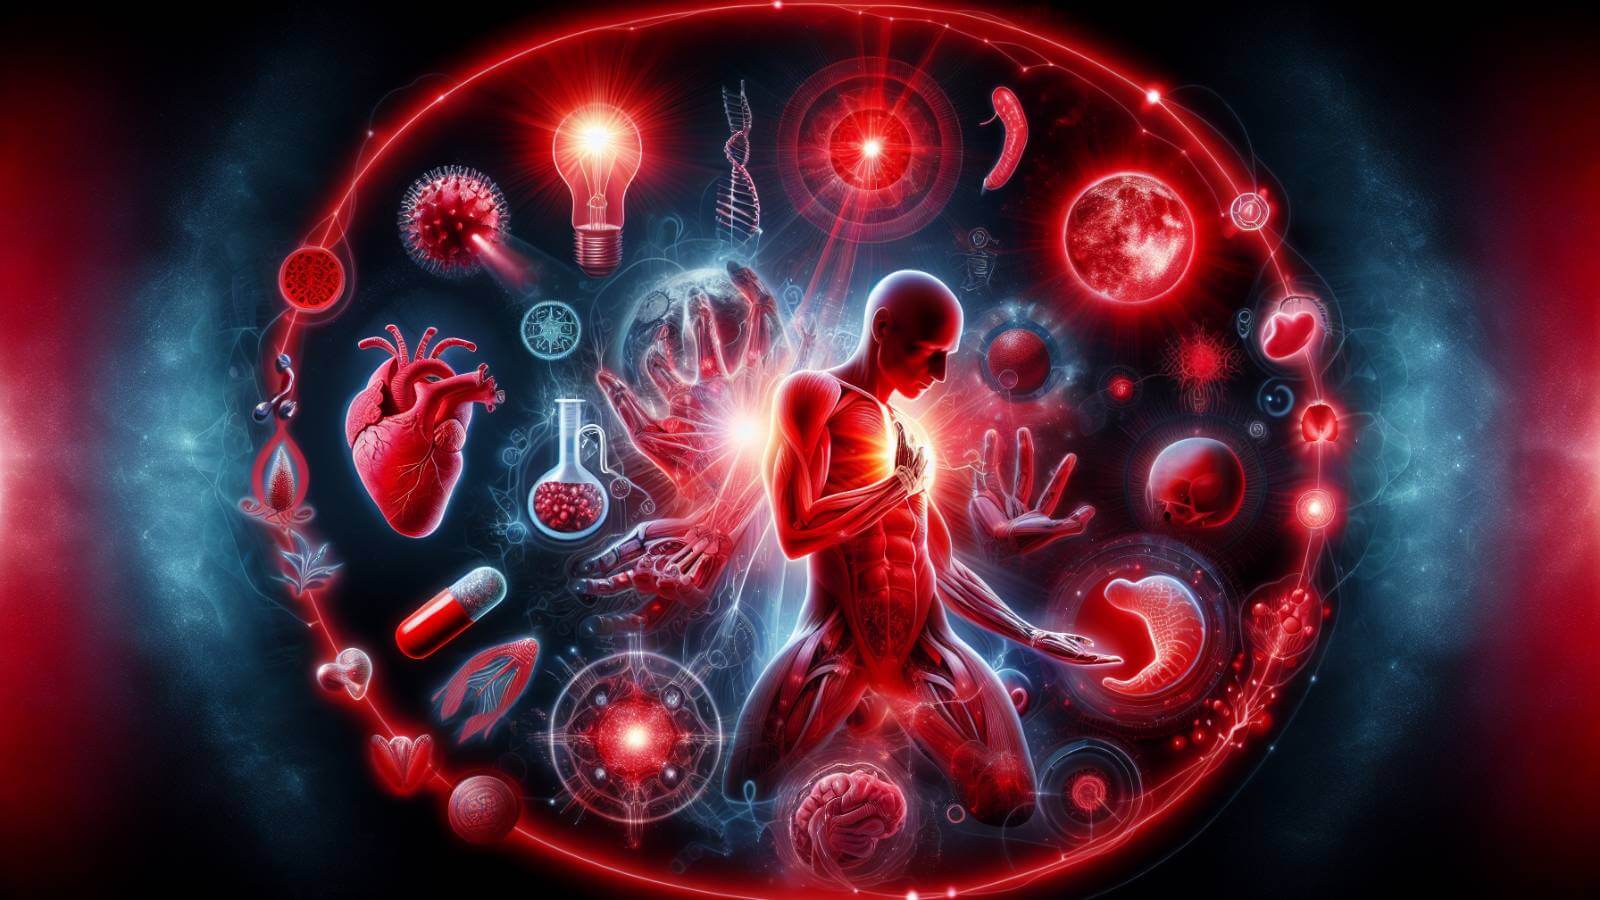 Een persoon ondergaat een rood licht therapie sessie, waarbij rode lichtgolven de huid raken en de energieproductie in de cellen stimuleren, wat bijdr